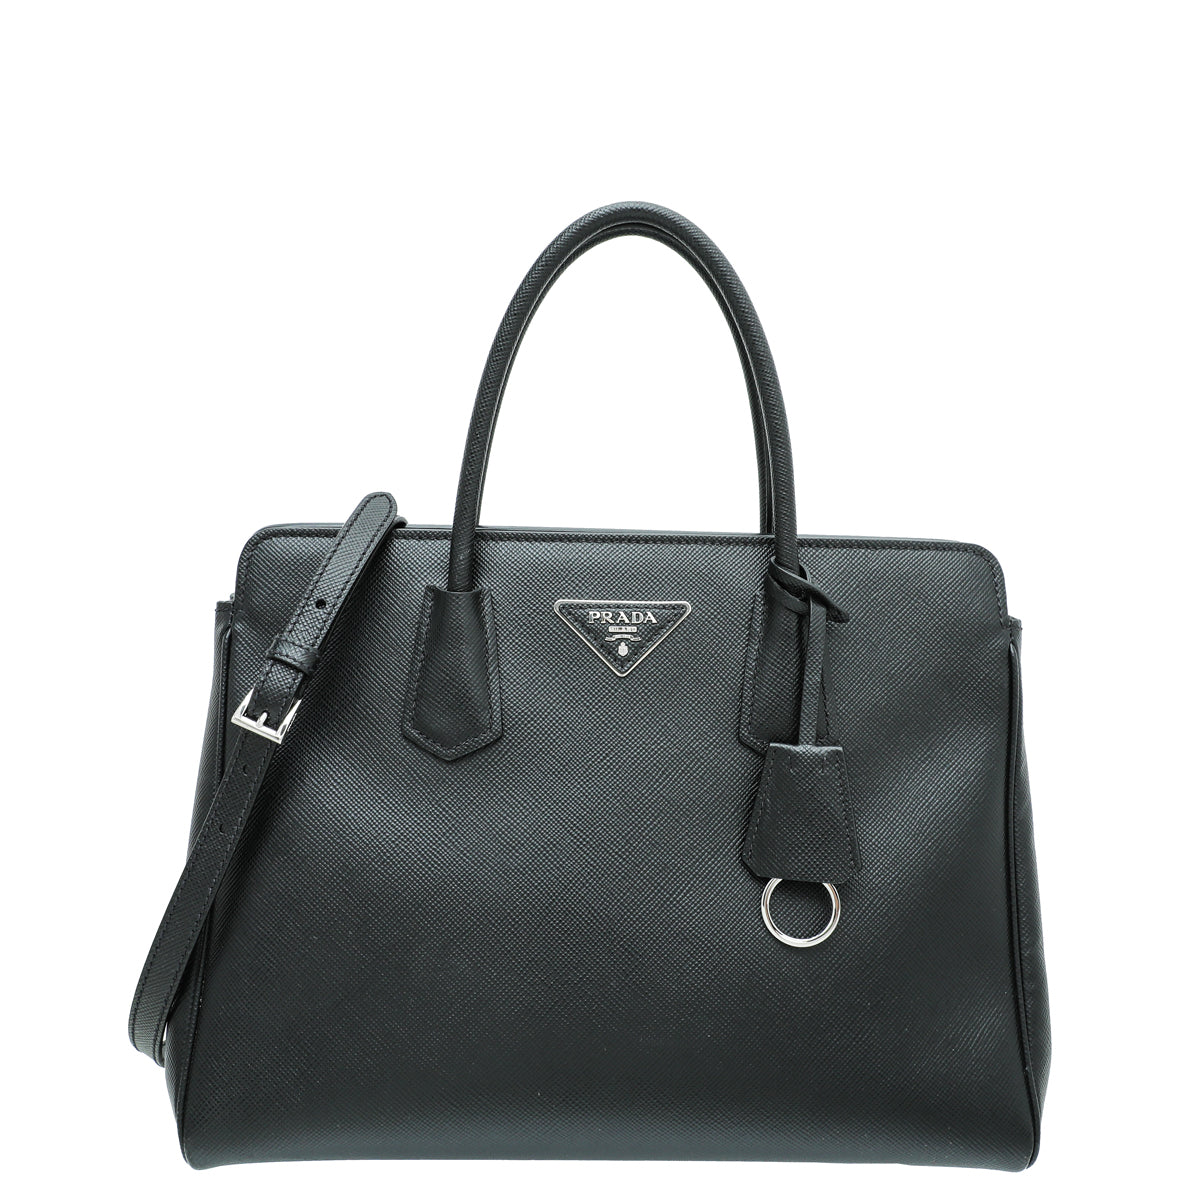 Prada Black Lux Tote Bag